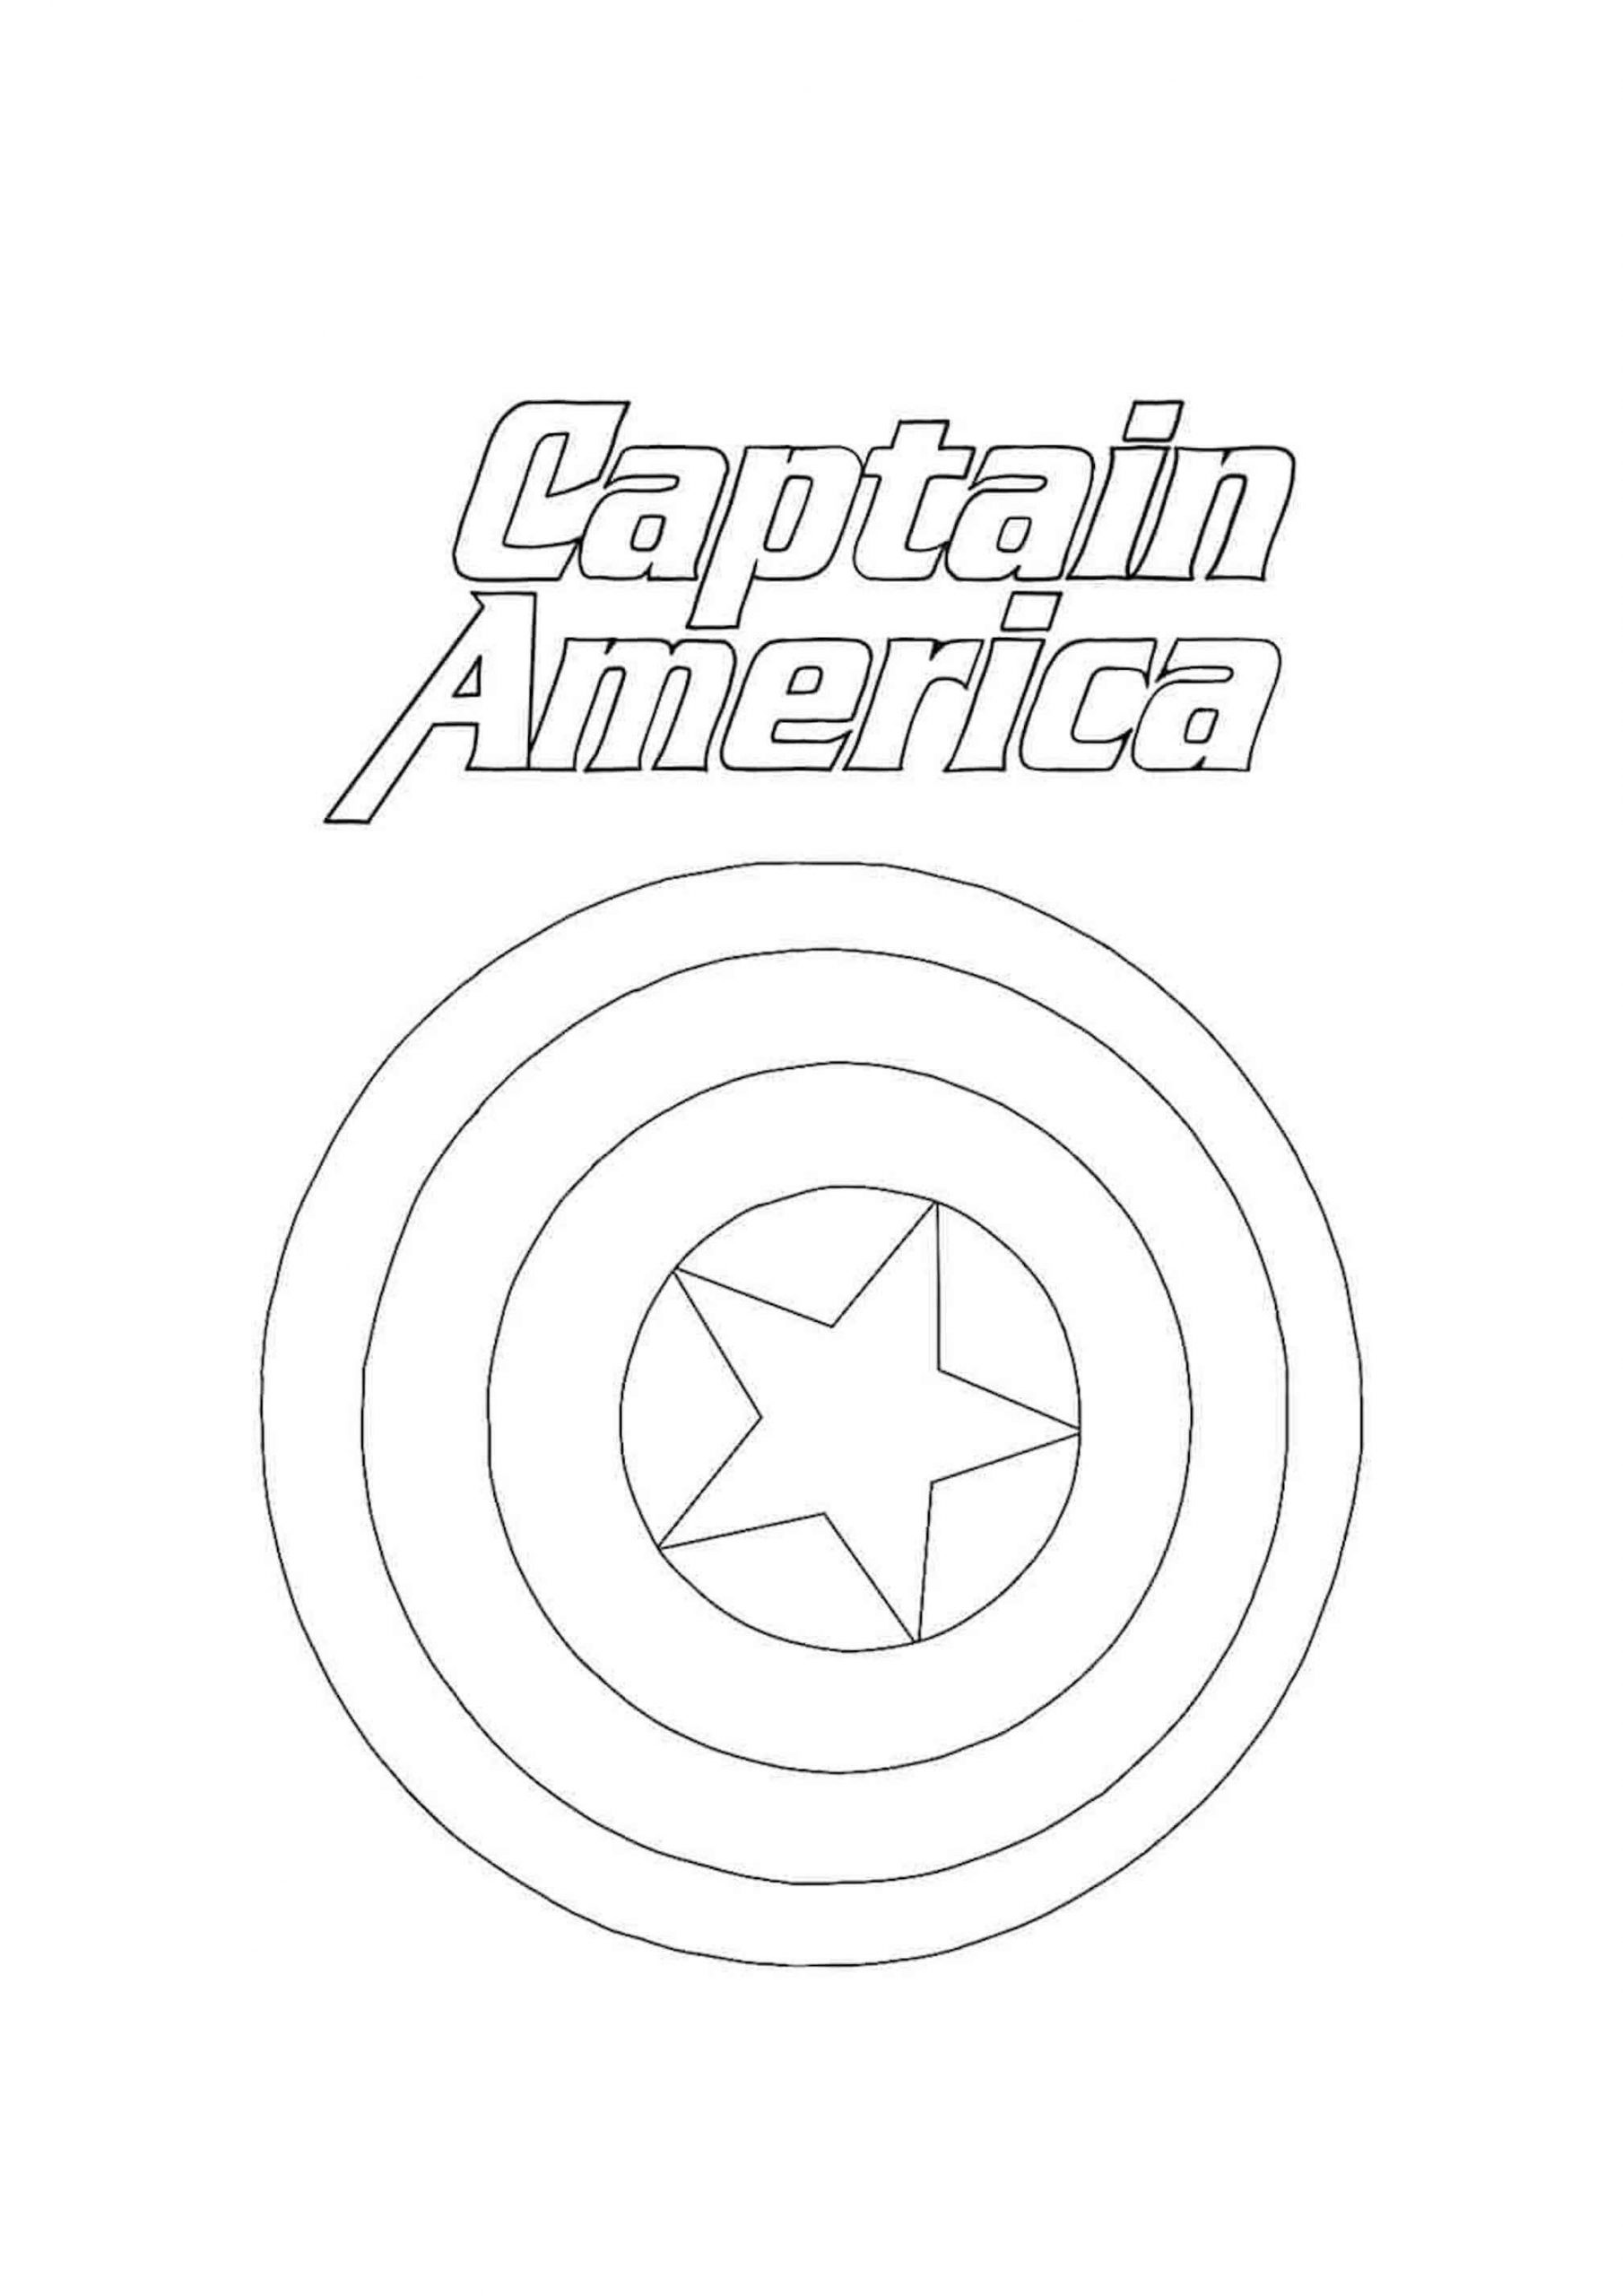 Escudo do Capitão América para colorir